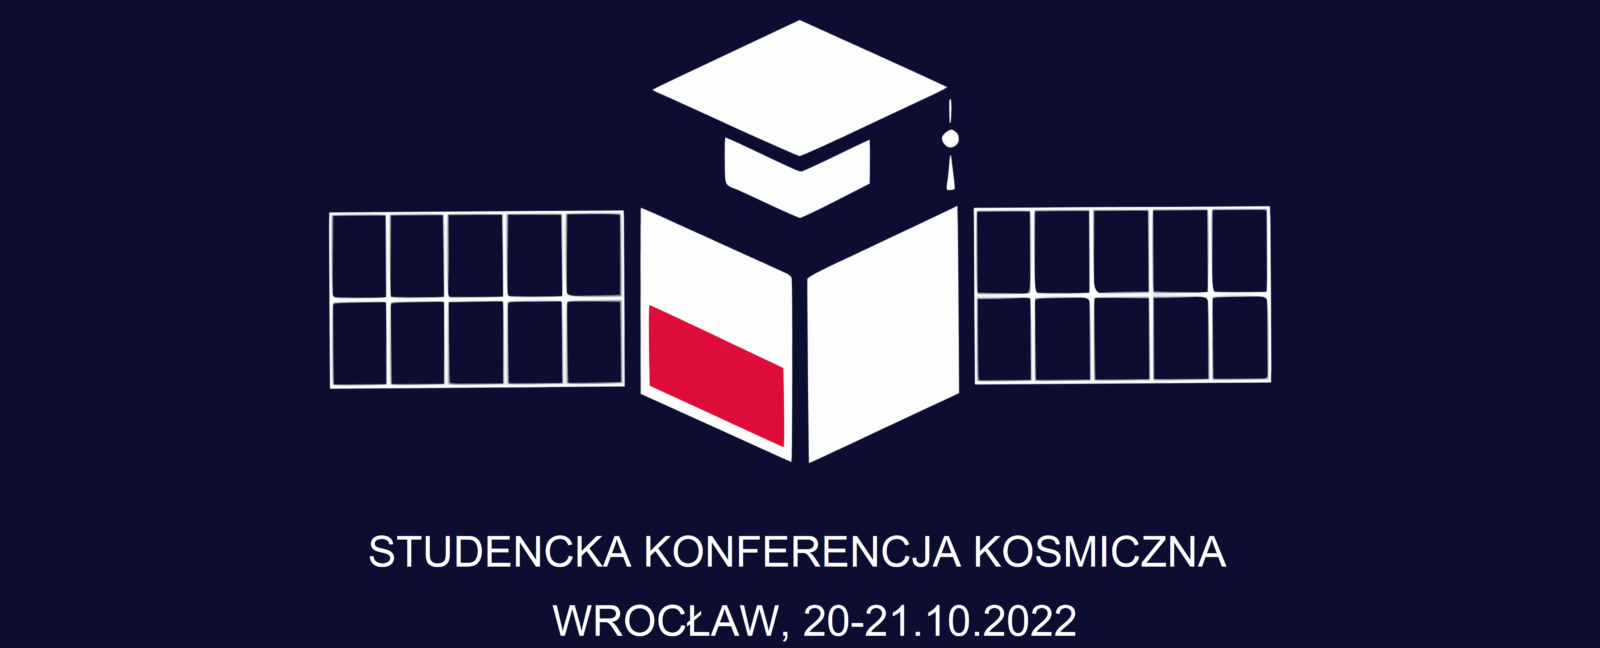 Studencka Konferencja Kosmiczna Wrocław 2022: znamy agendę